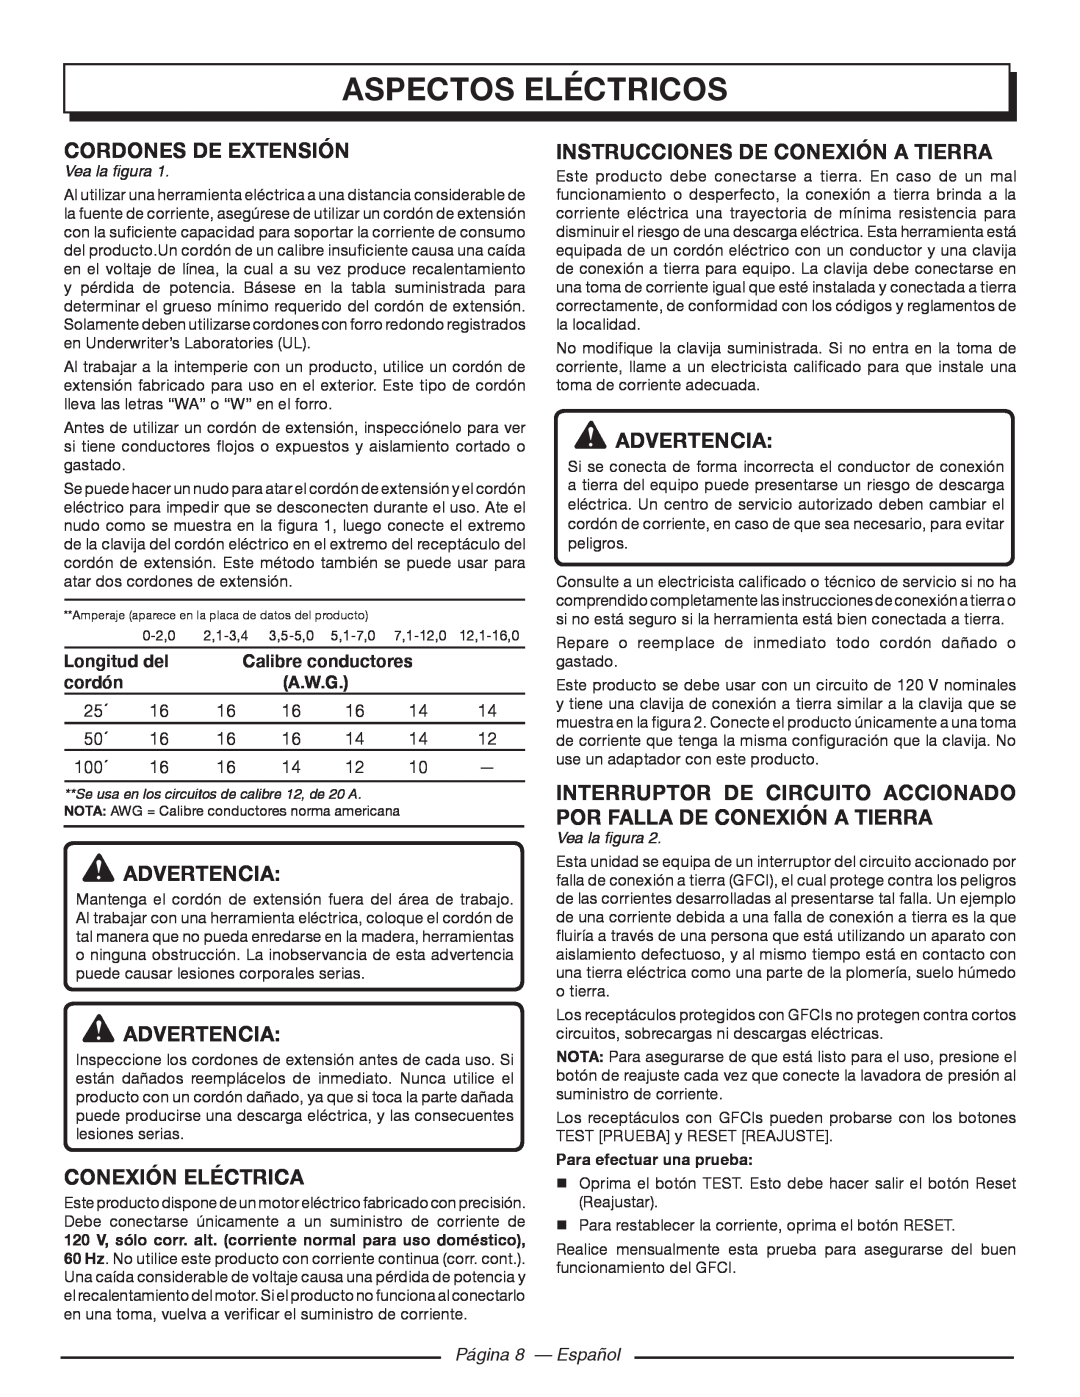 Homelite UT80720 Aspectos Eléctricos, Conexión Eléctrica, Instrucciones De Conexión A Tierra, Página 8 - Español 